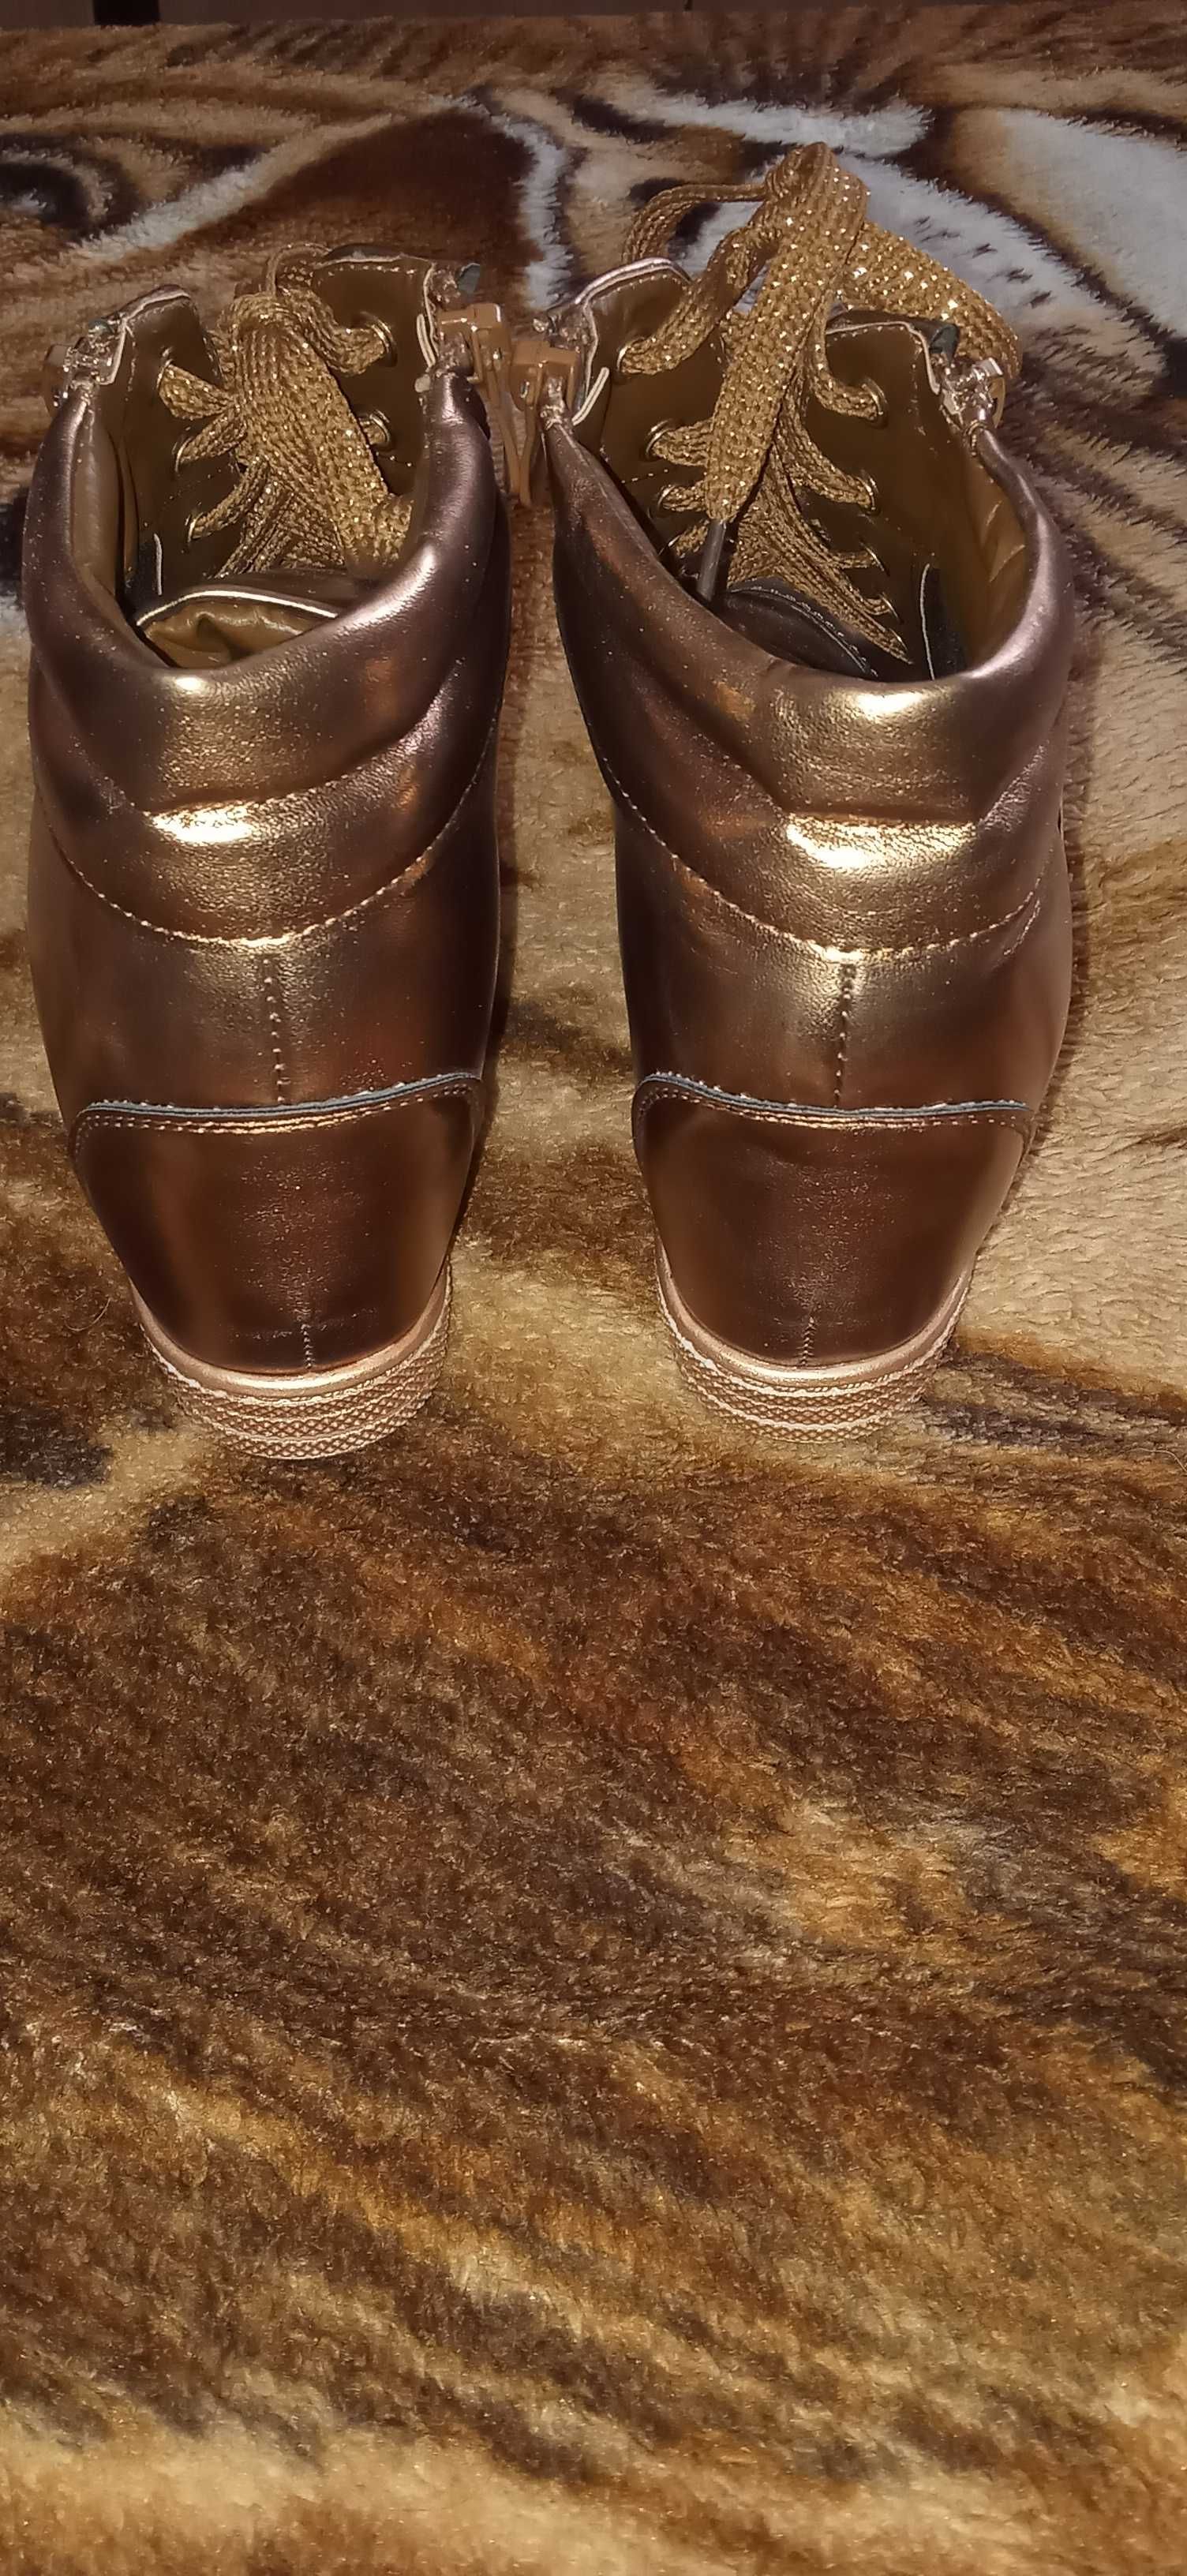 Nowe buty damskie złote r. 39 na koturnie